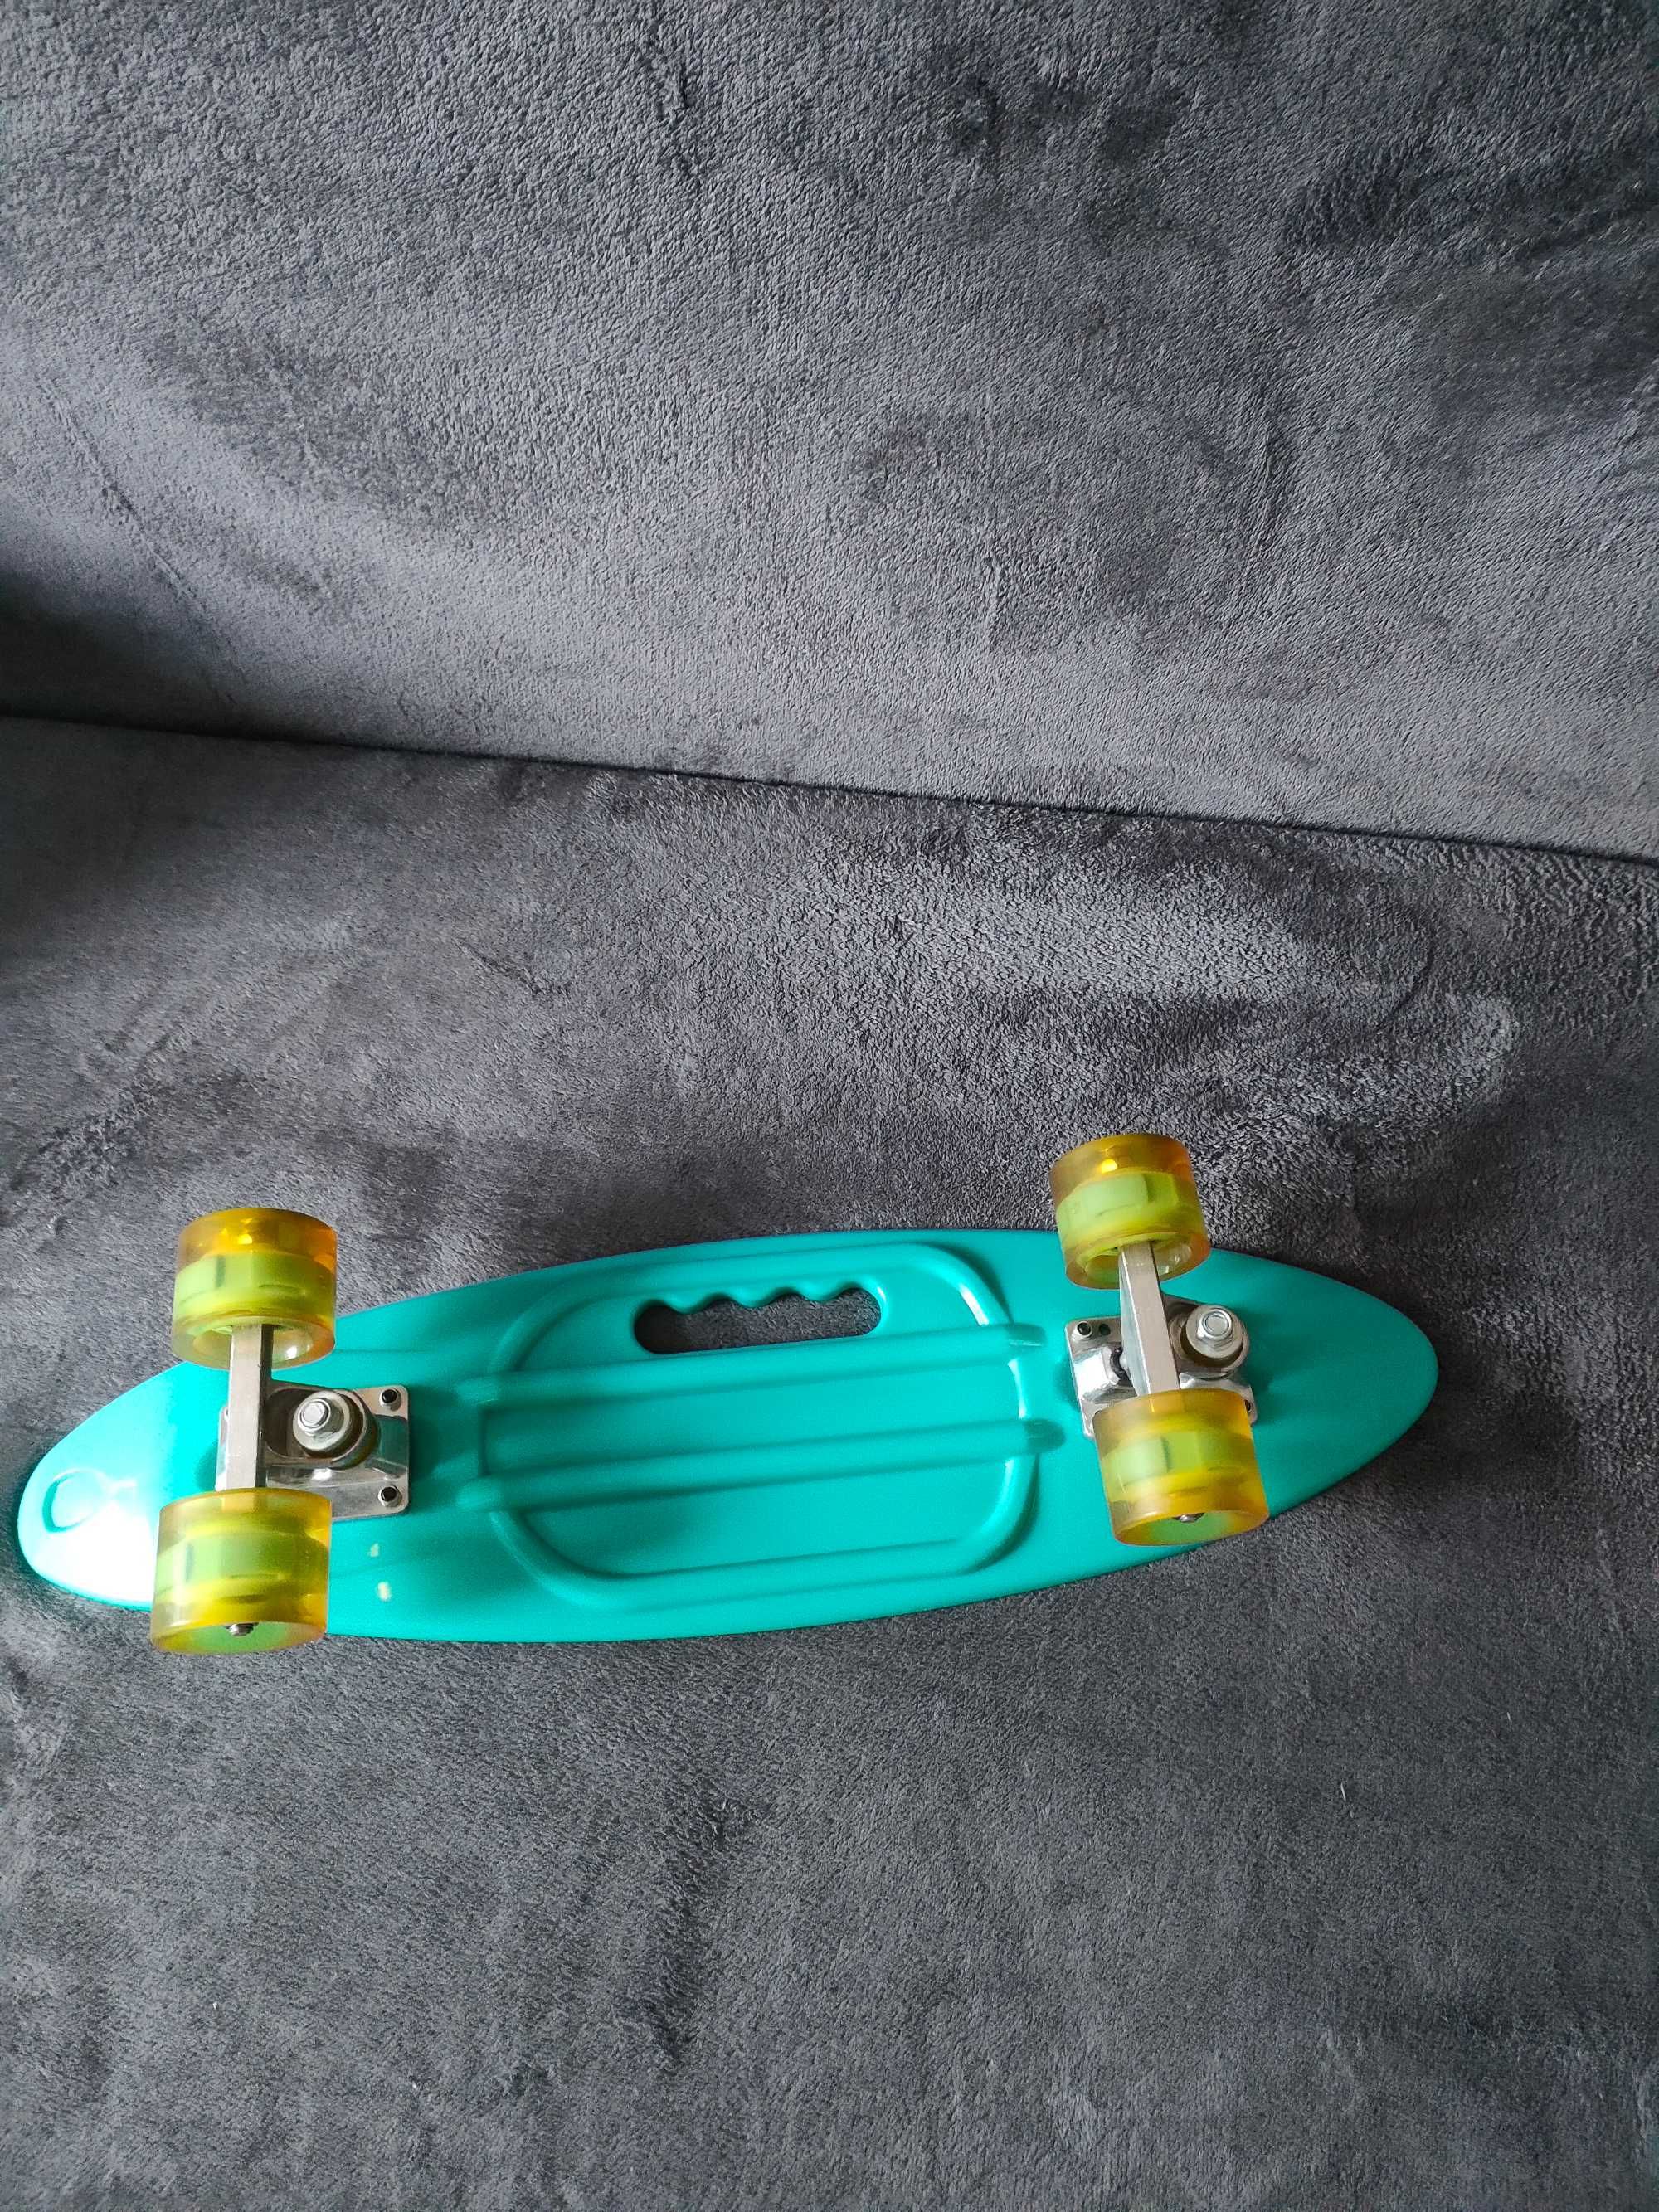 Продам новый скейтборд(Penny board на гелевой прокладке)